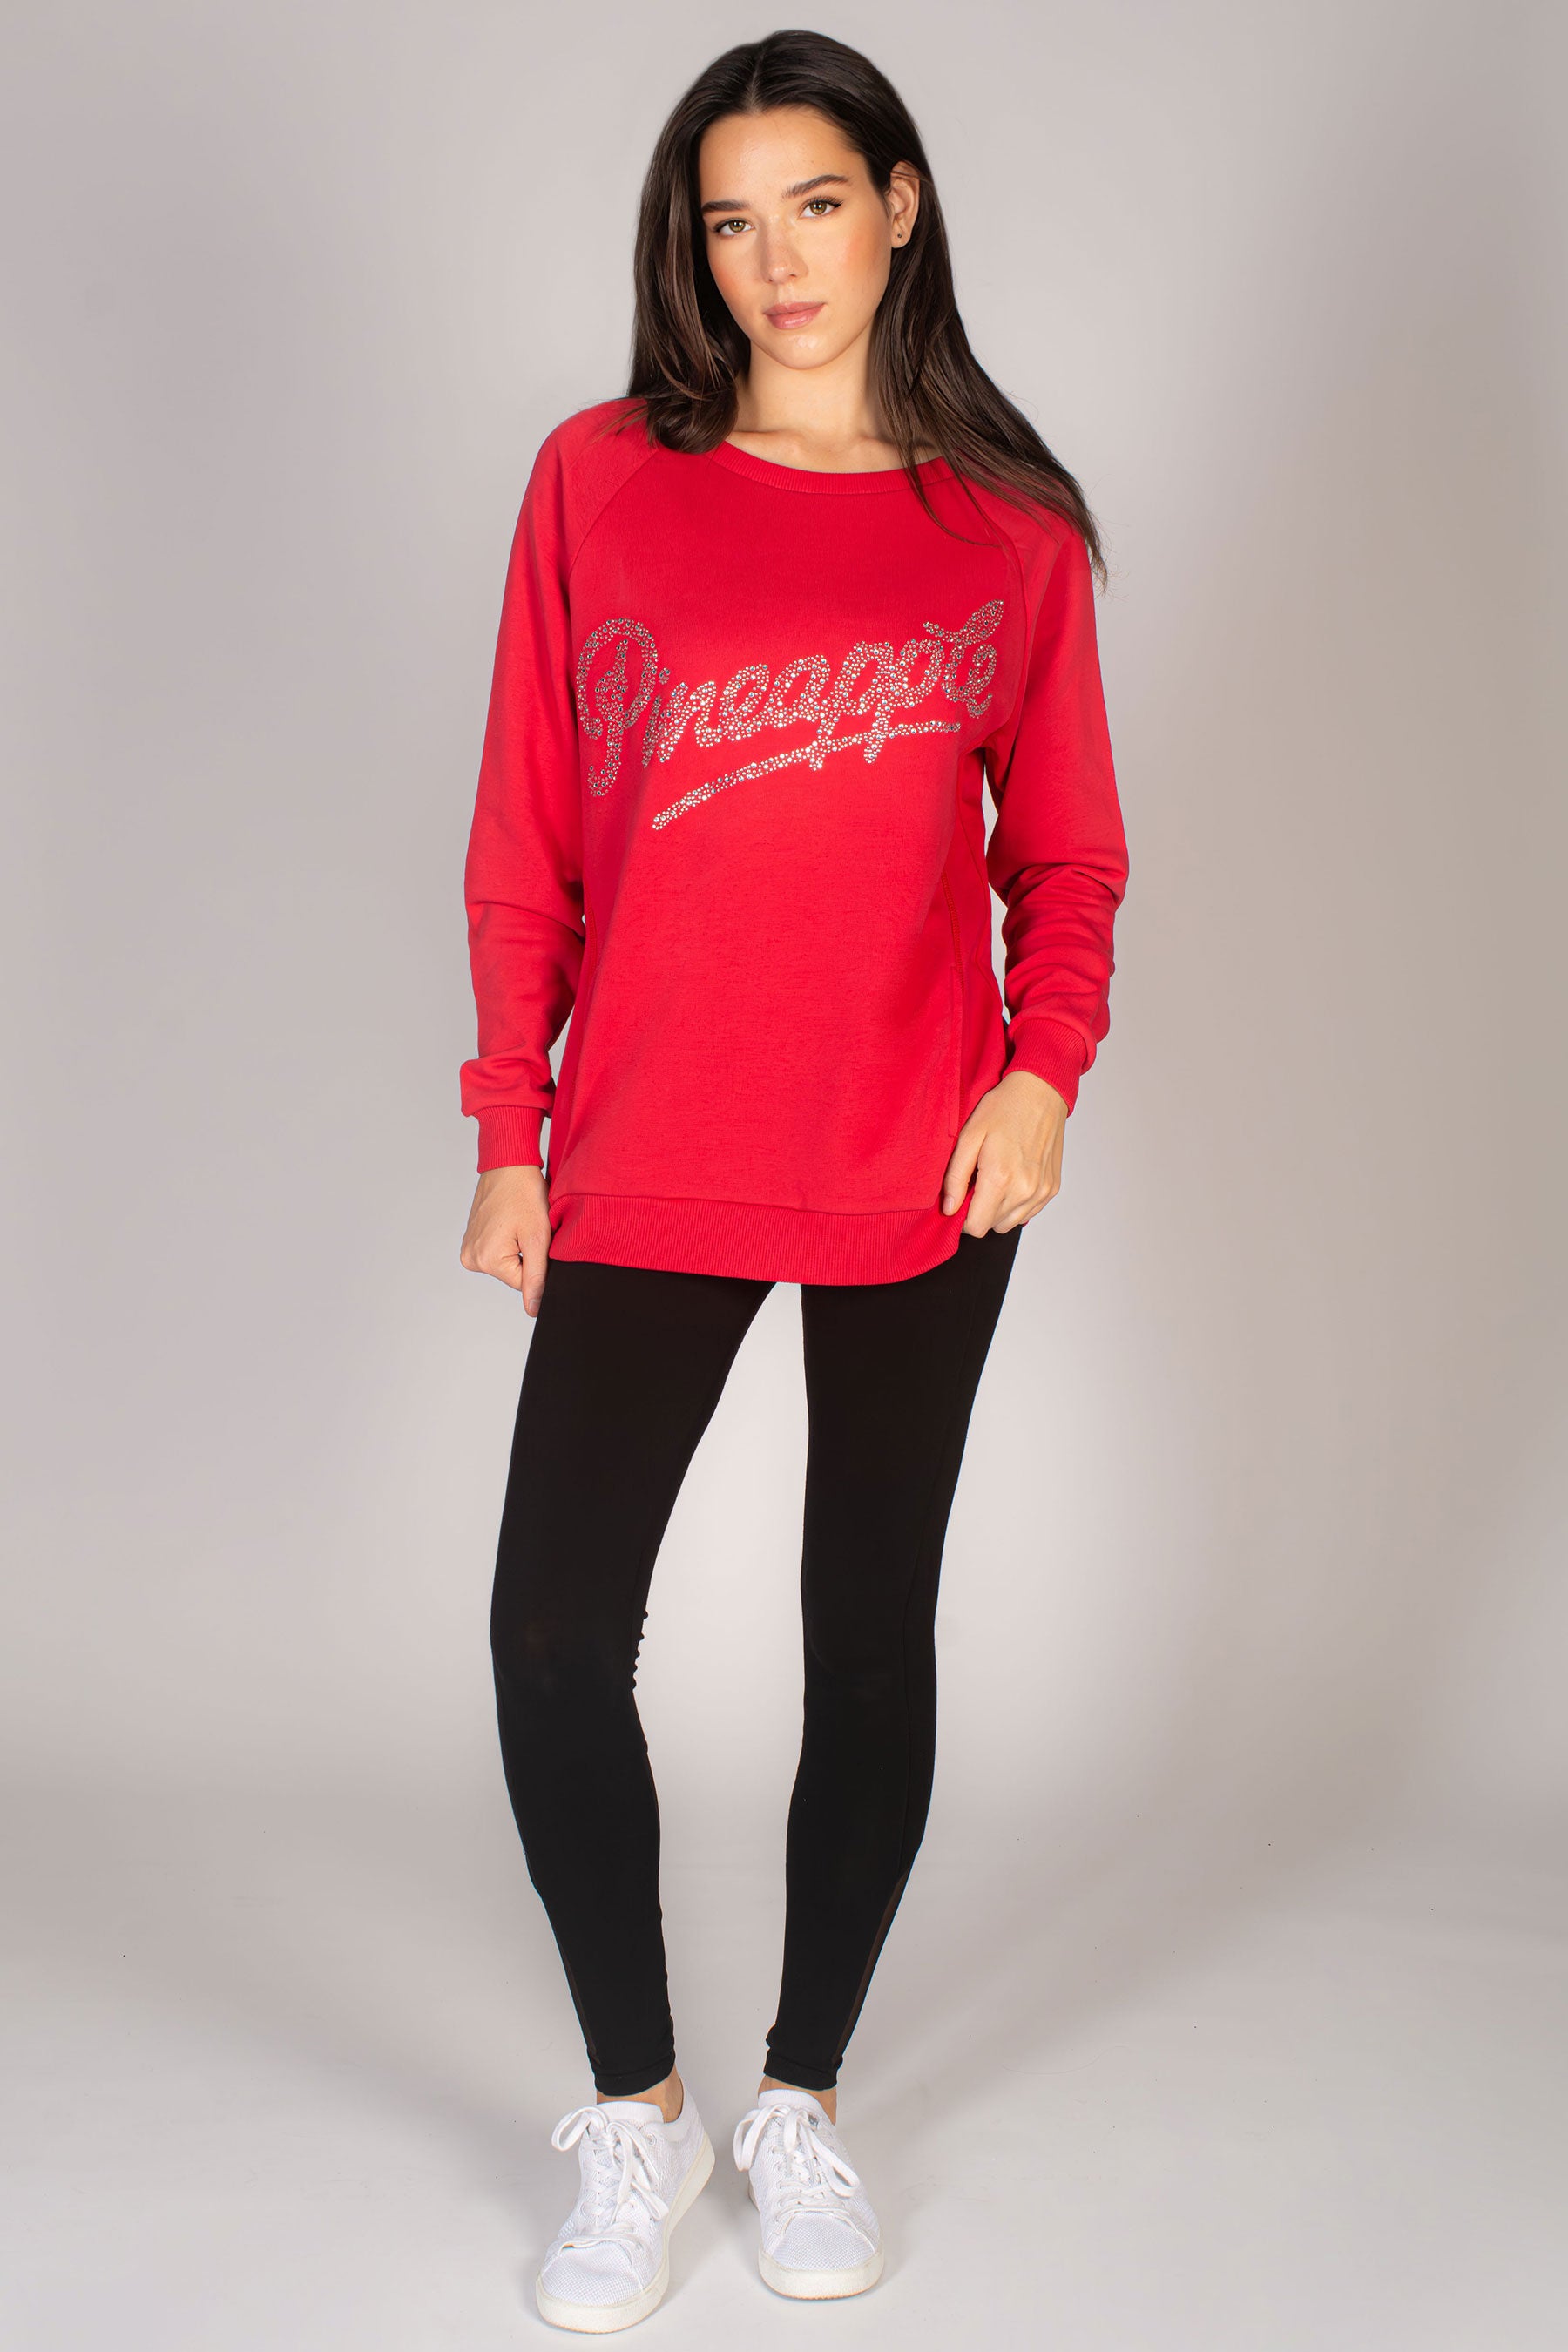 Women's UK Size XL Hoodies & Sweatshirts